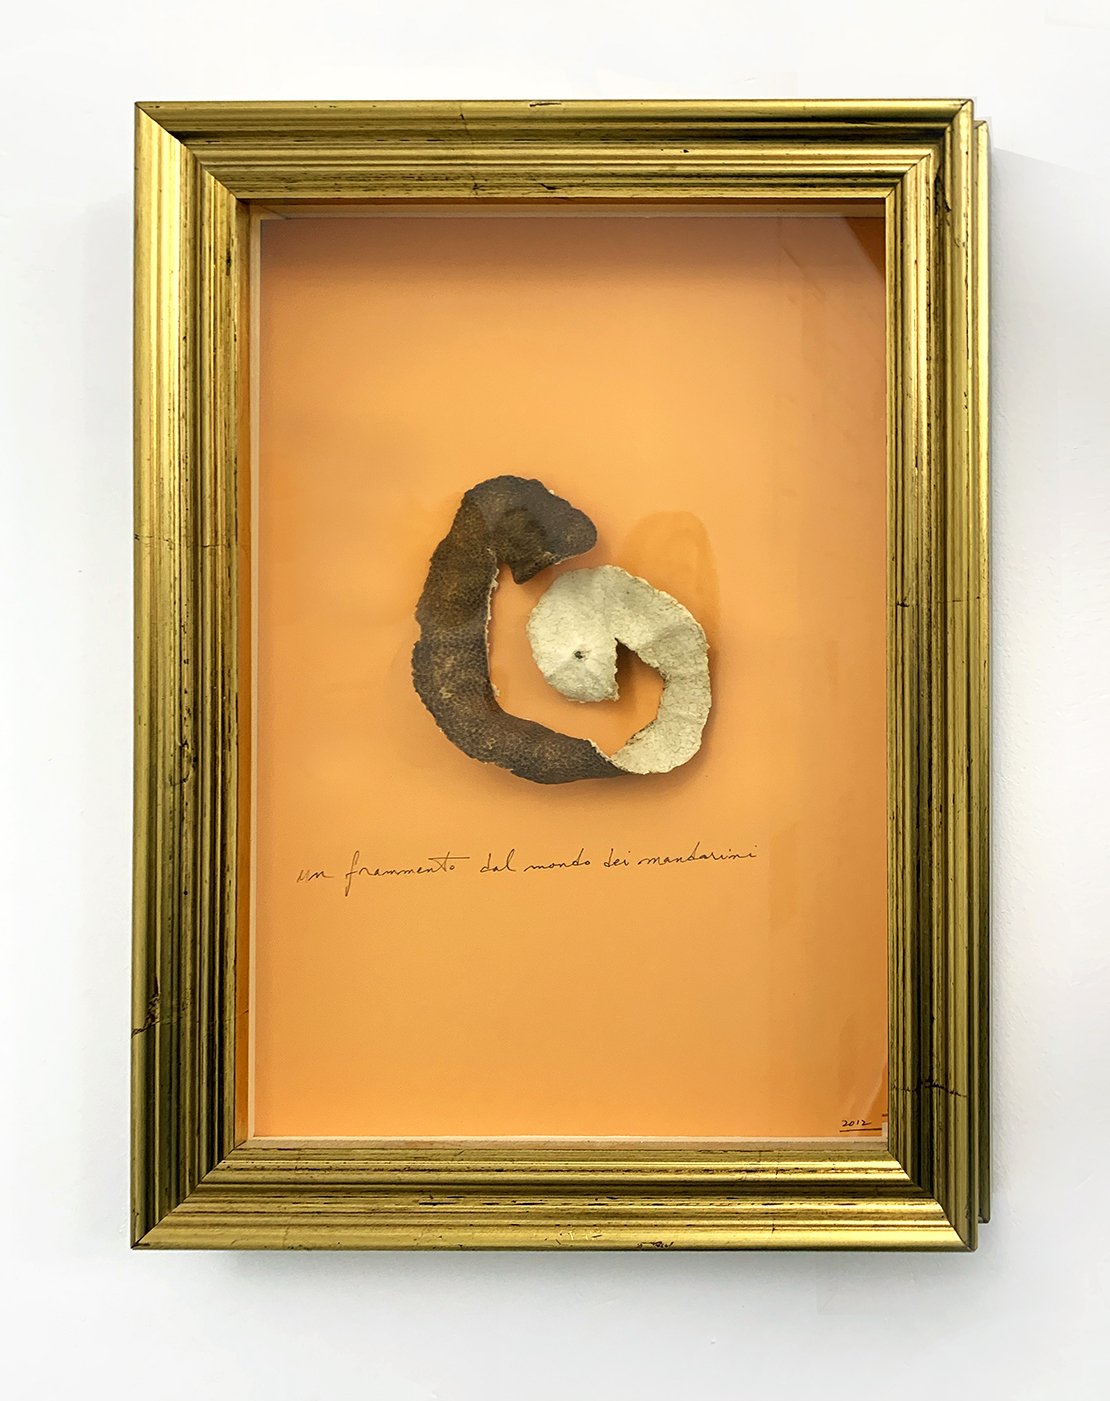 Philip Corner, Piece of Reality Mandarino, mandarin peel and graphite on paper, 13 1/2 x 10 inches, 2022.